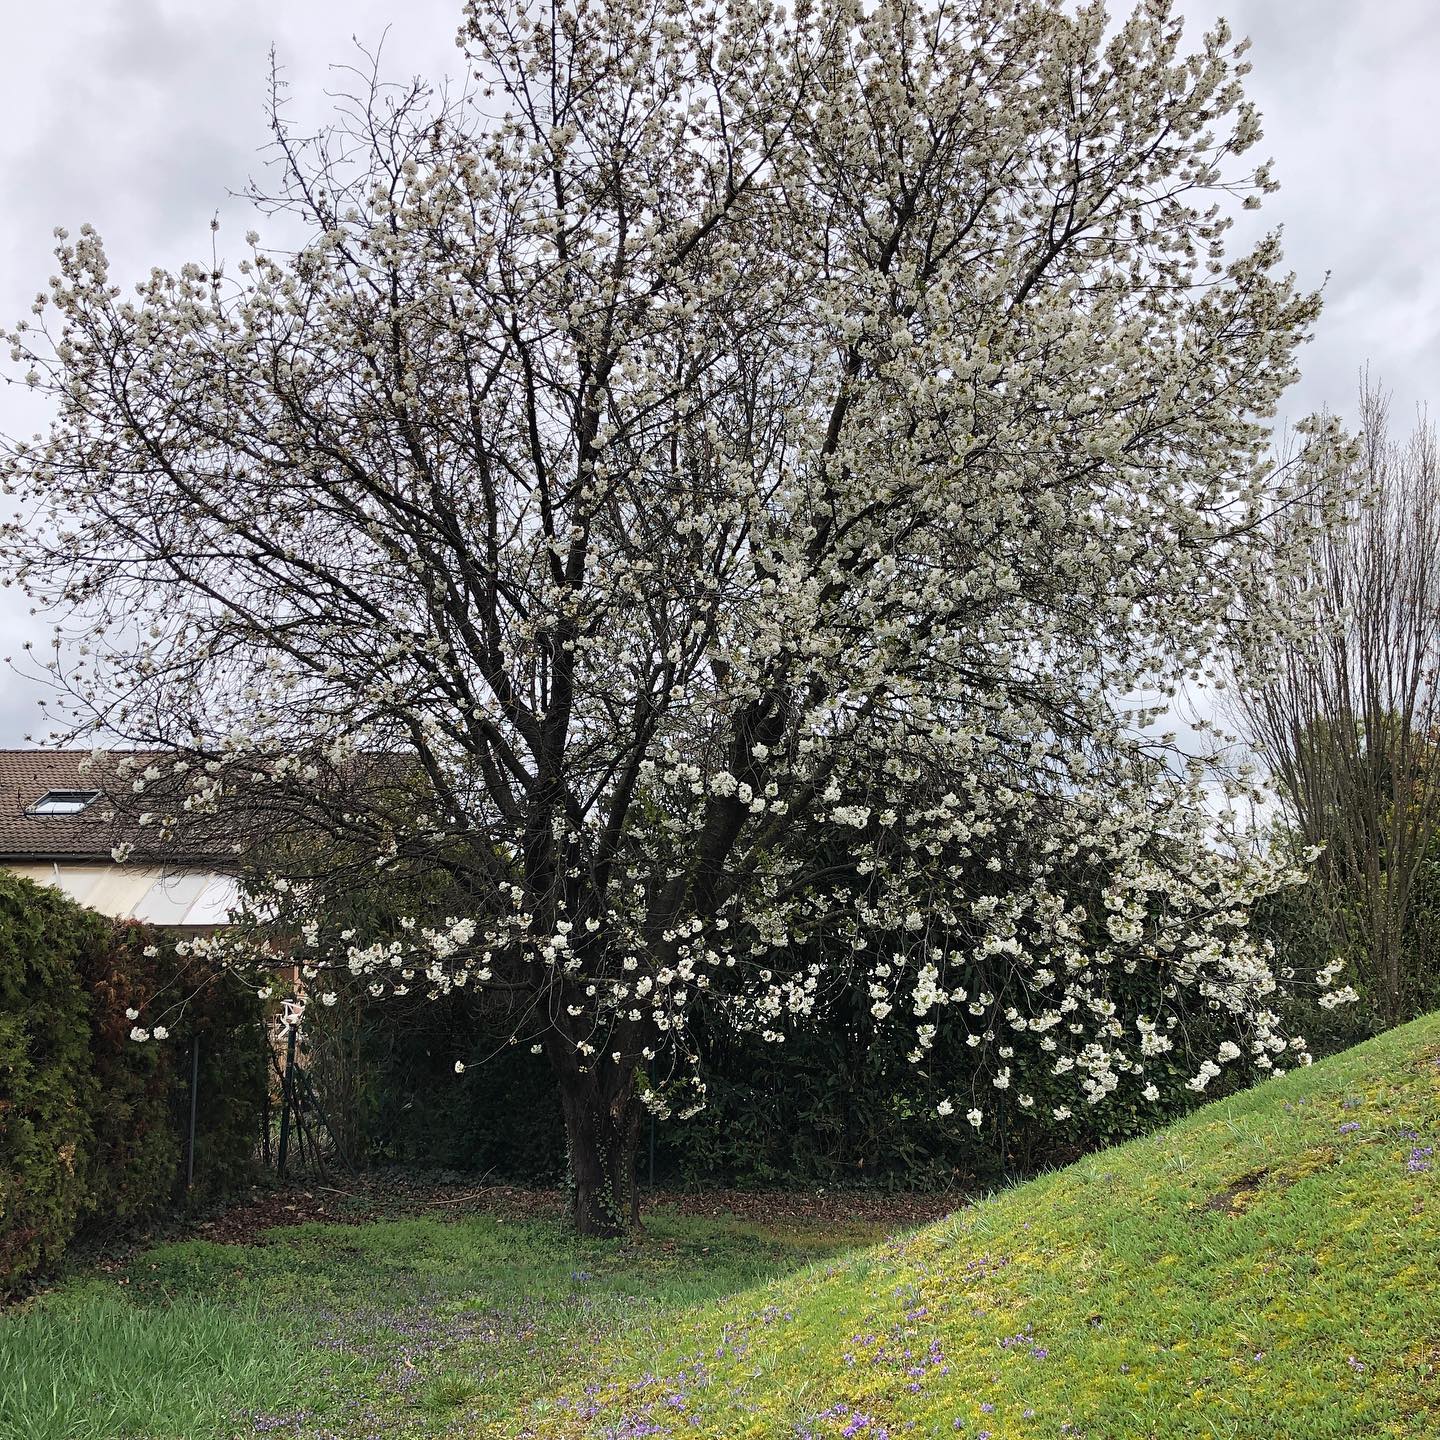 Der Kirschbaum blüht in voller Pracht 😍 #spring #springblossoms #kischbaum #kirschblüten #kirschblüte #cherryblossom #garten #garden #gardening #gardenersworld